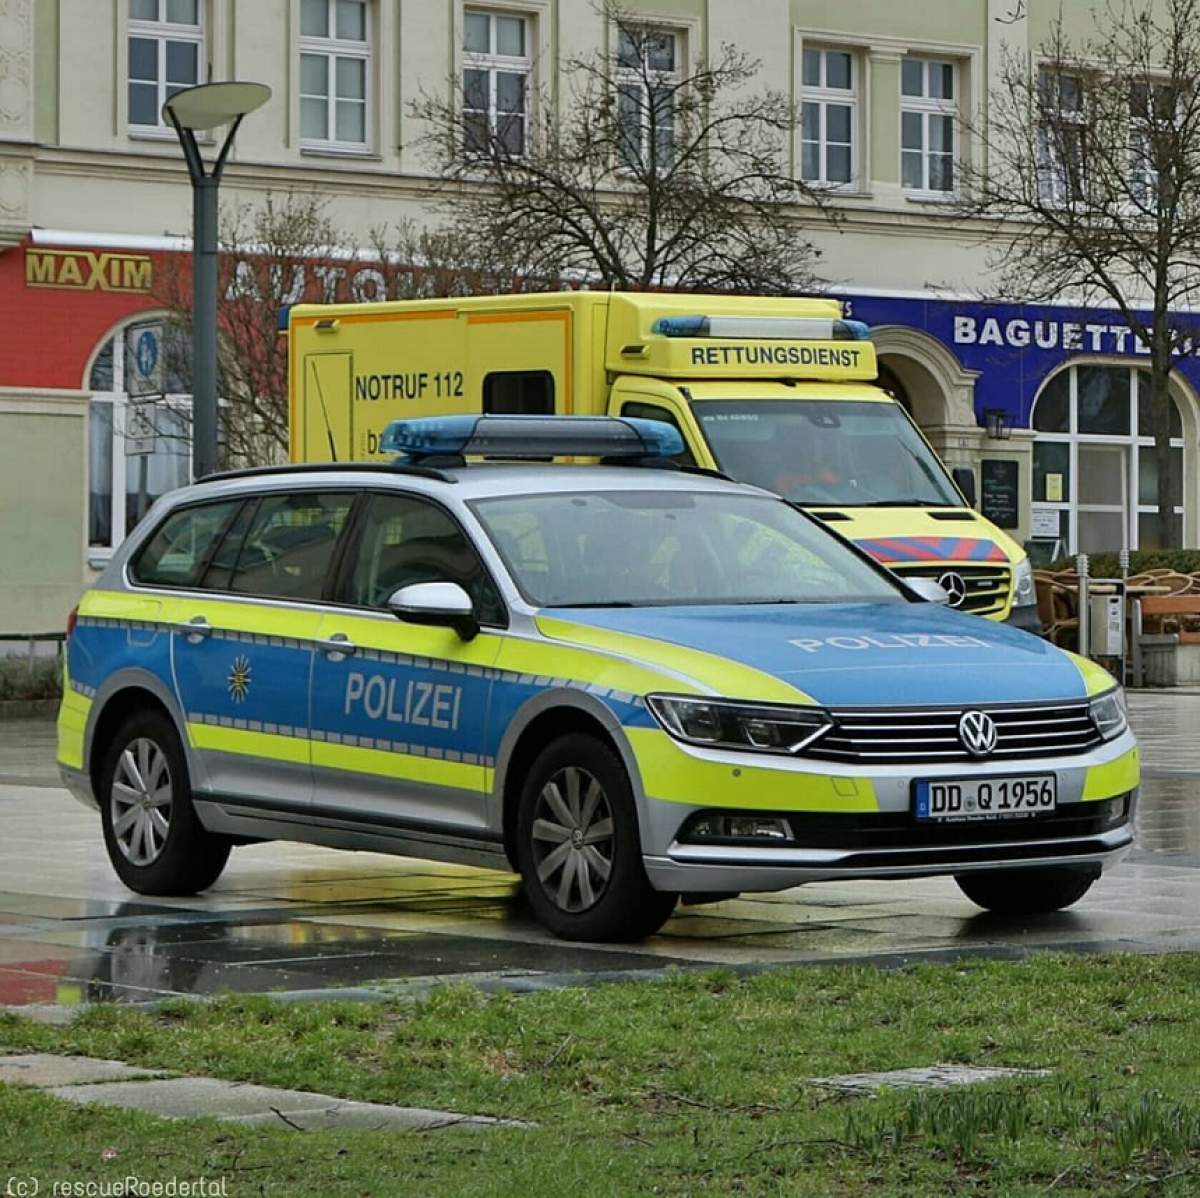 Un român a furat o maşină în Viena chiar în momentul în care şoferul punea o valiză în portbagaj